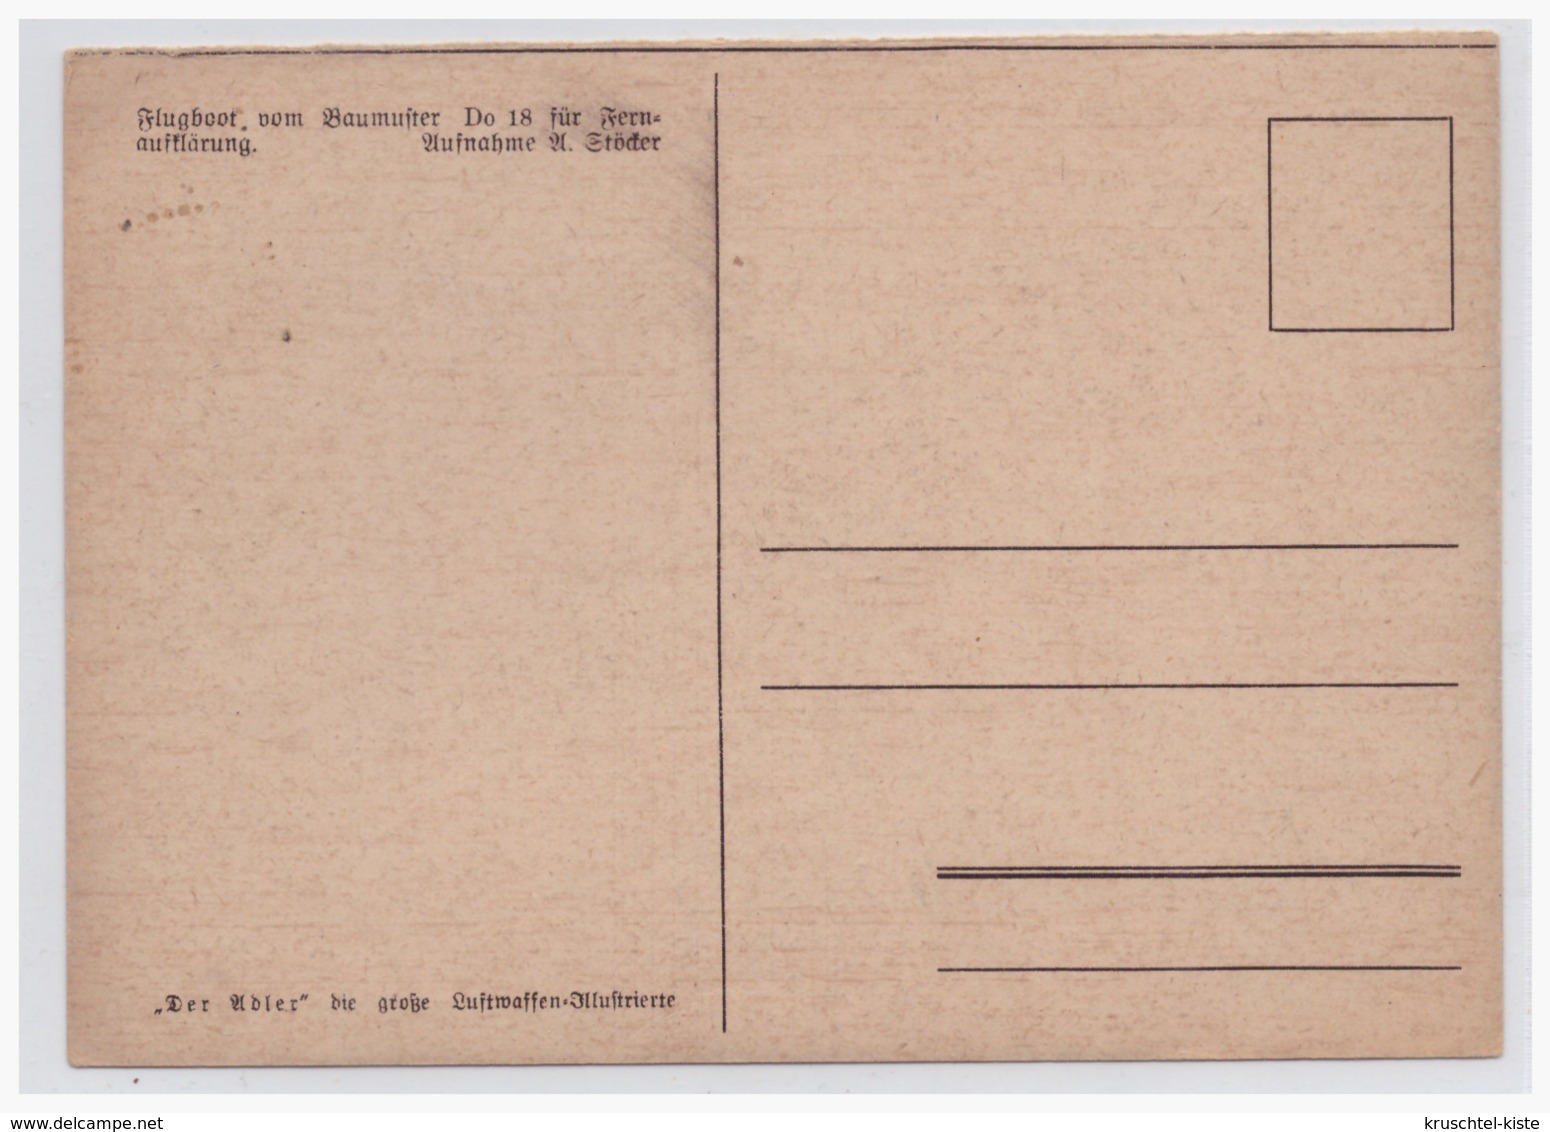 DT- Reich Propagandakarte (002023) Flugboot Vom Baumuster Do 18, Entnommen Aus "Der Adler", Ungebraucht - Briefe U. Dokumente